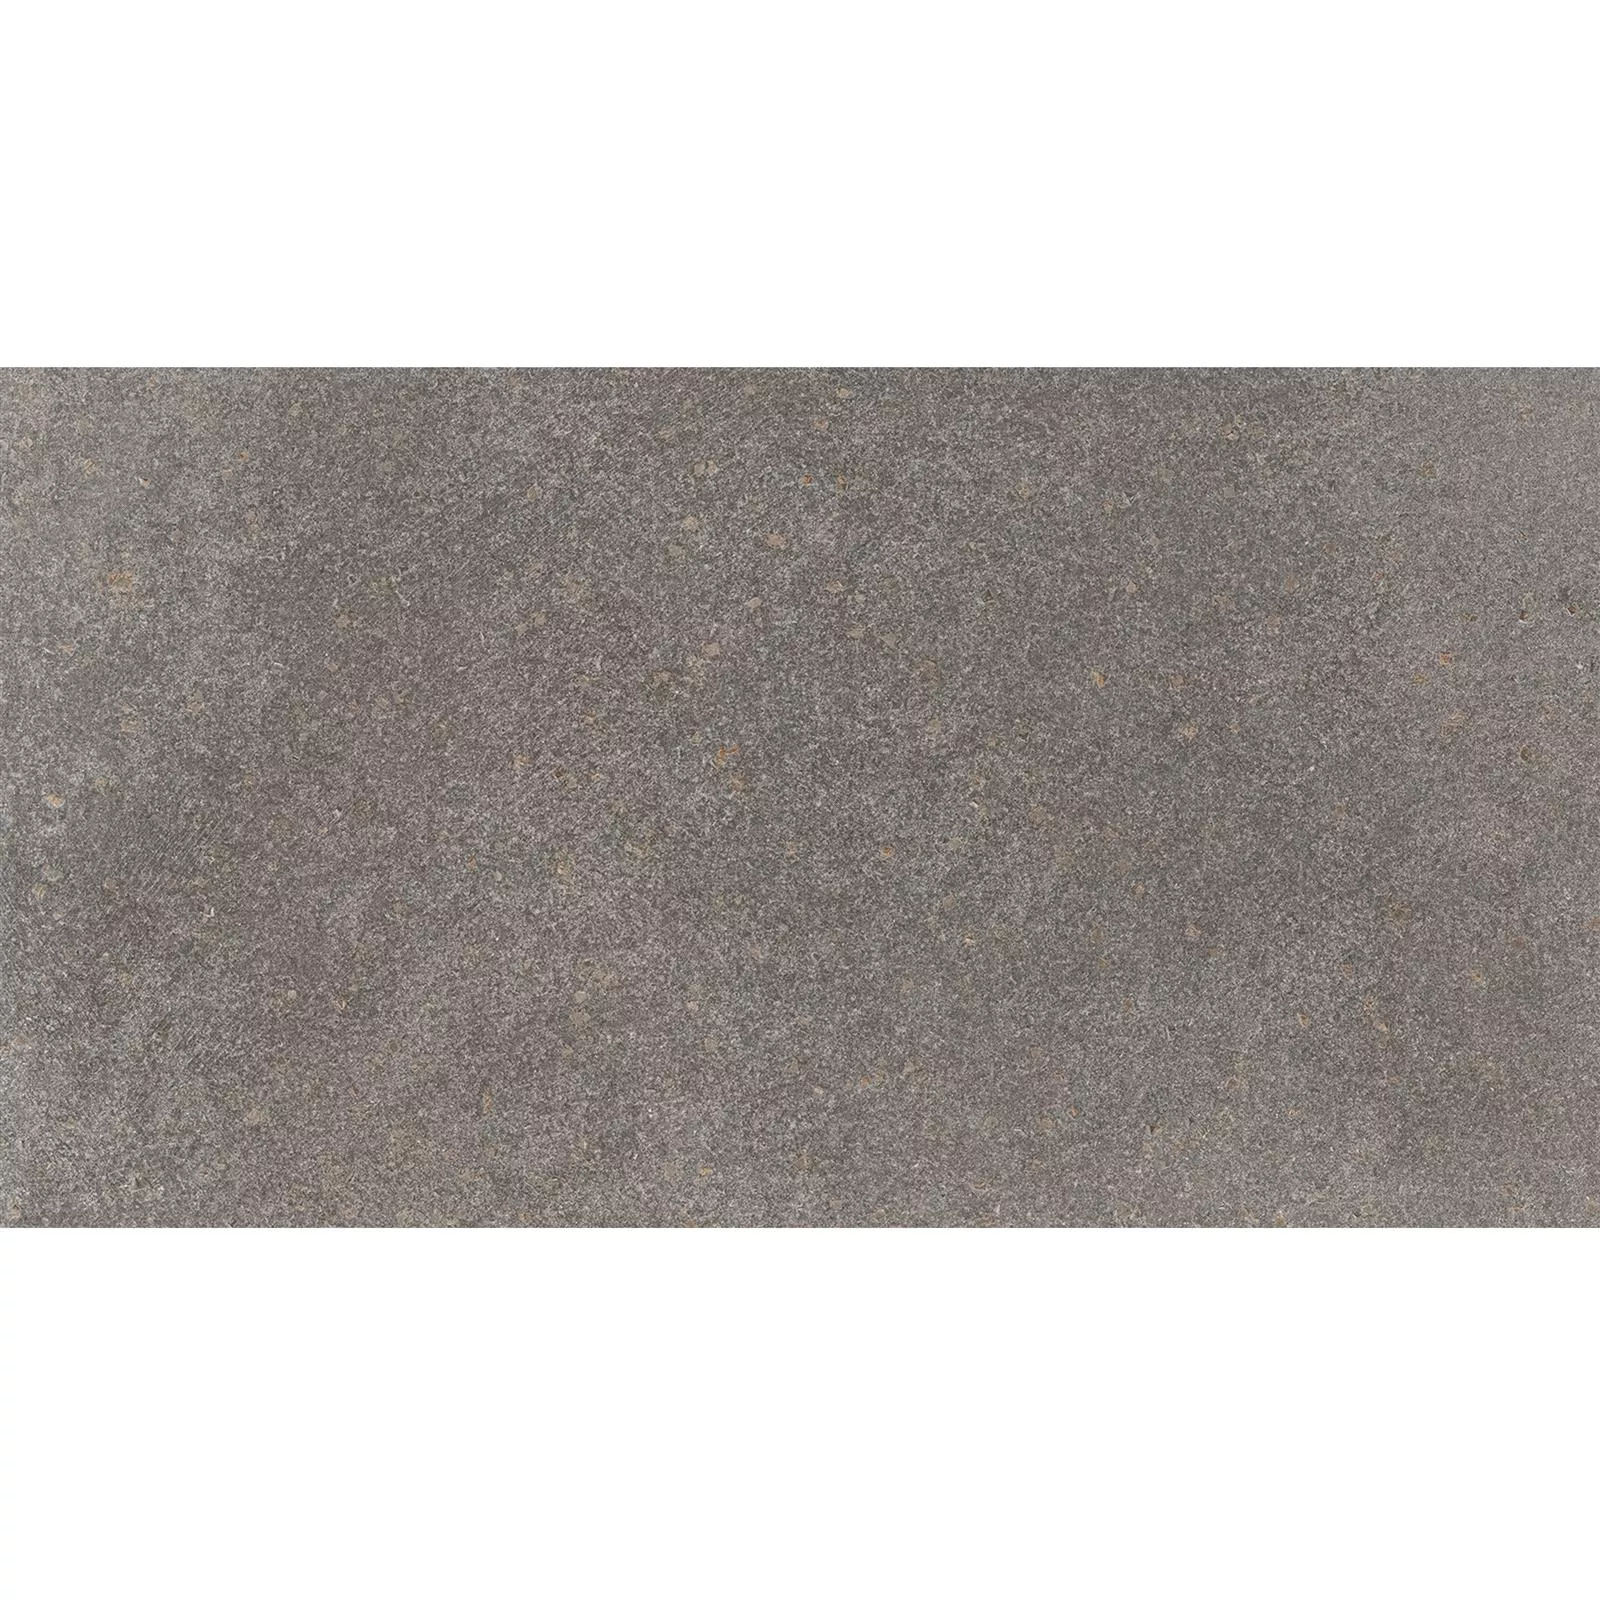 Muestra Pavimentos Aspecto de Piedra Horizon Marrón 30x60cm